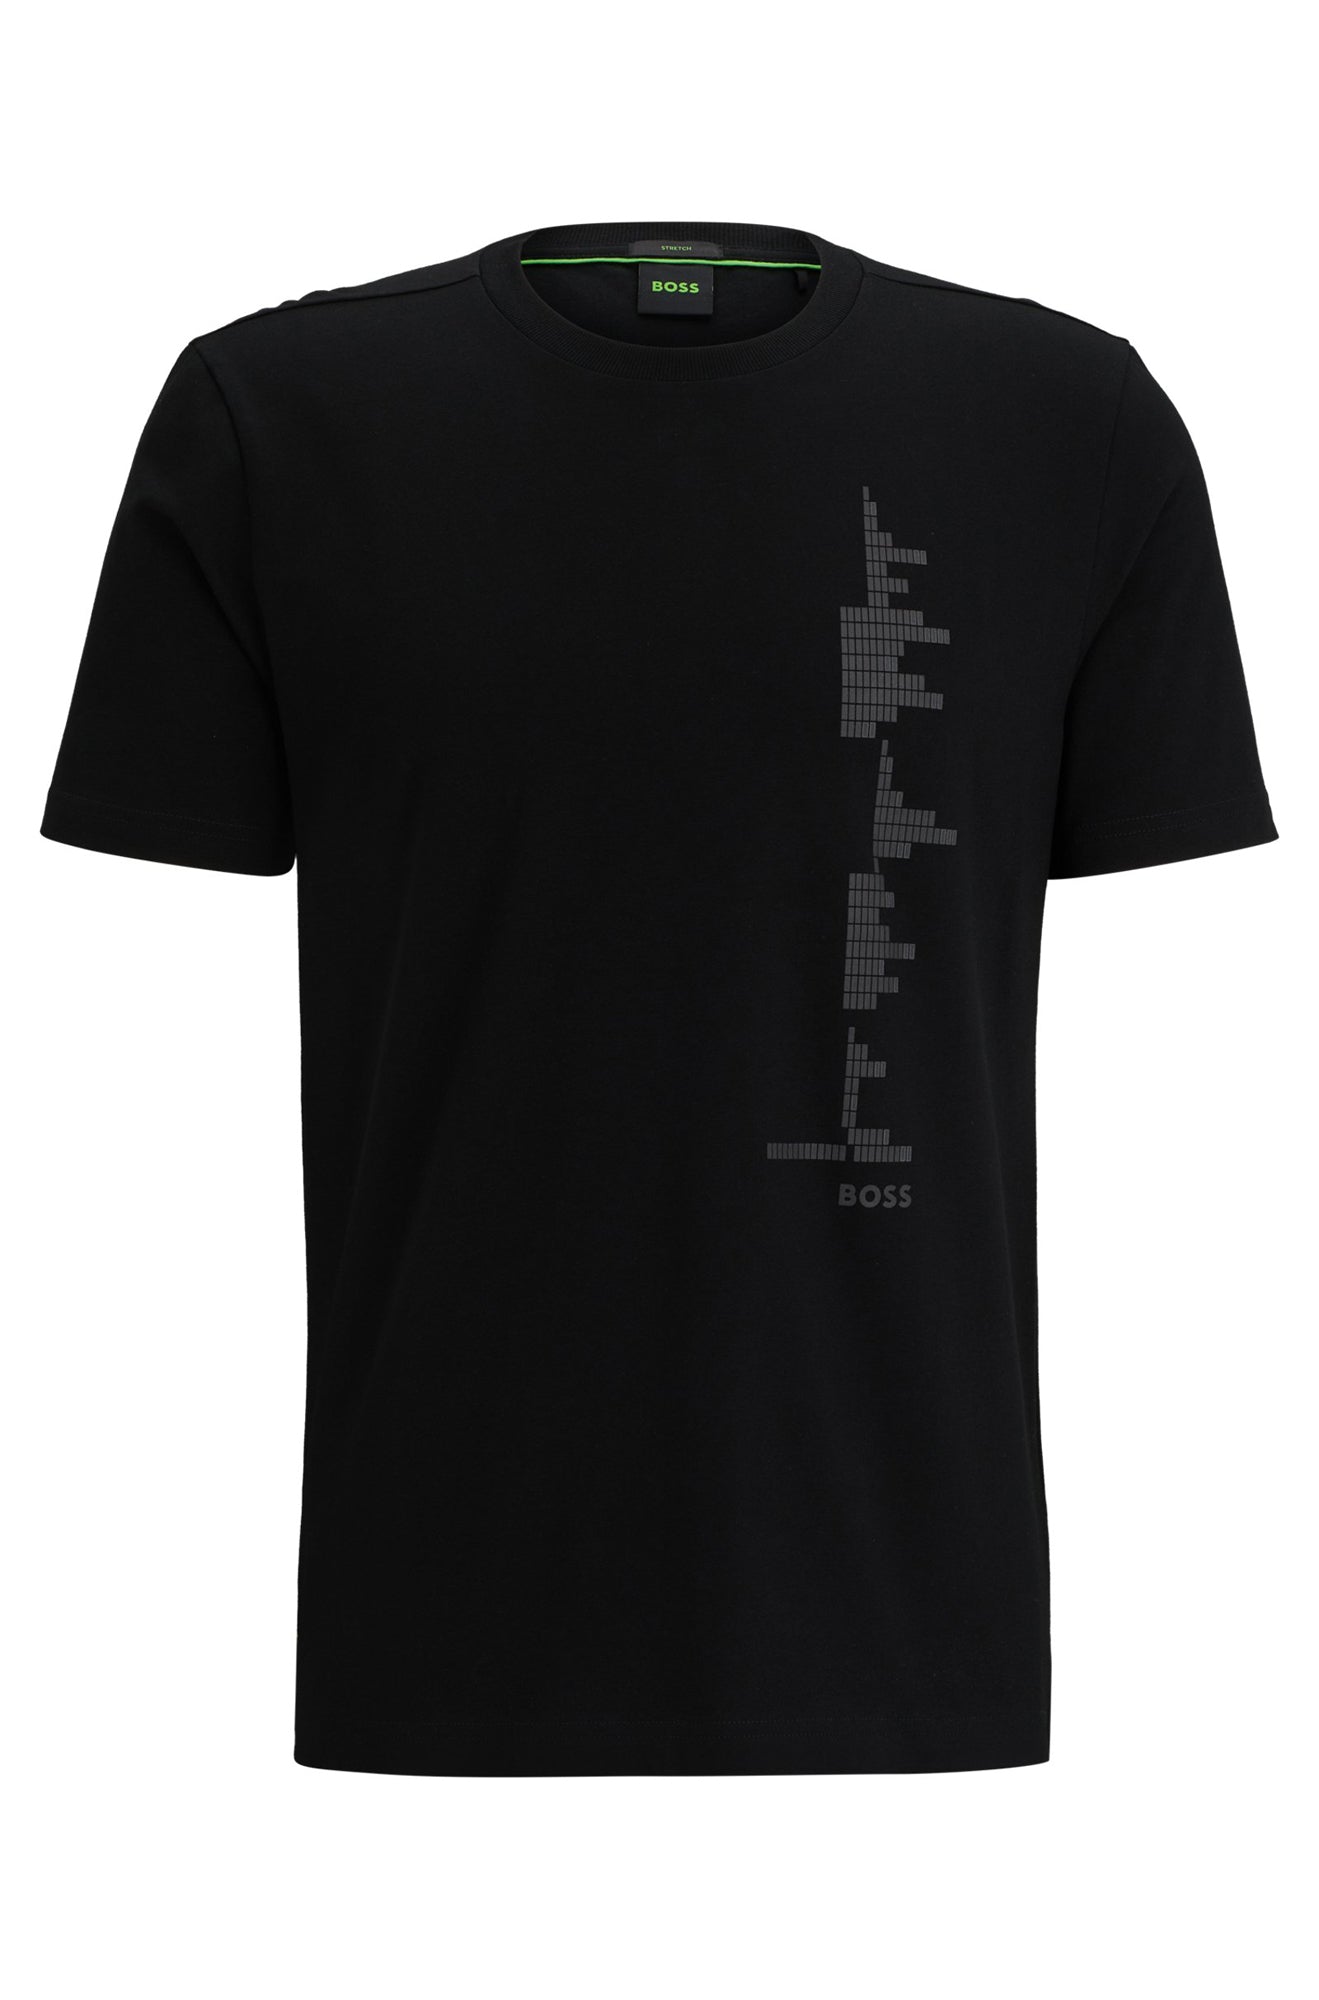 T-Shirt pour homme par HUGO BOSS | 50506340 Noir/001-BLACK | Boutique Vvög, vêtements mode pour homme et femme